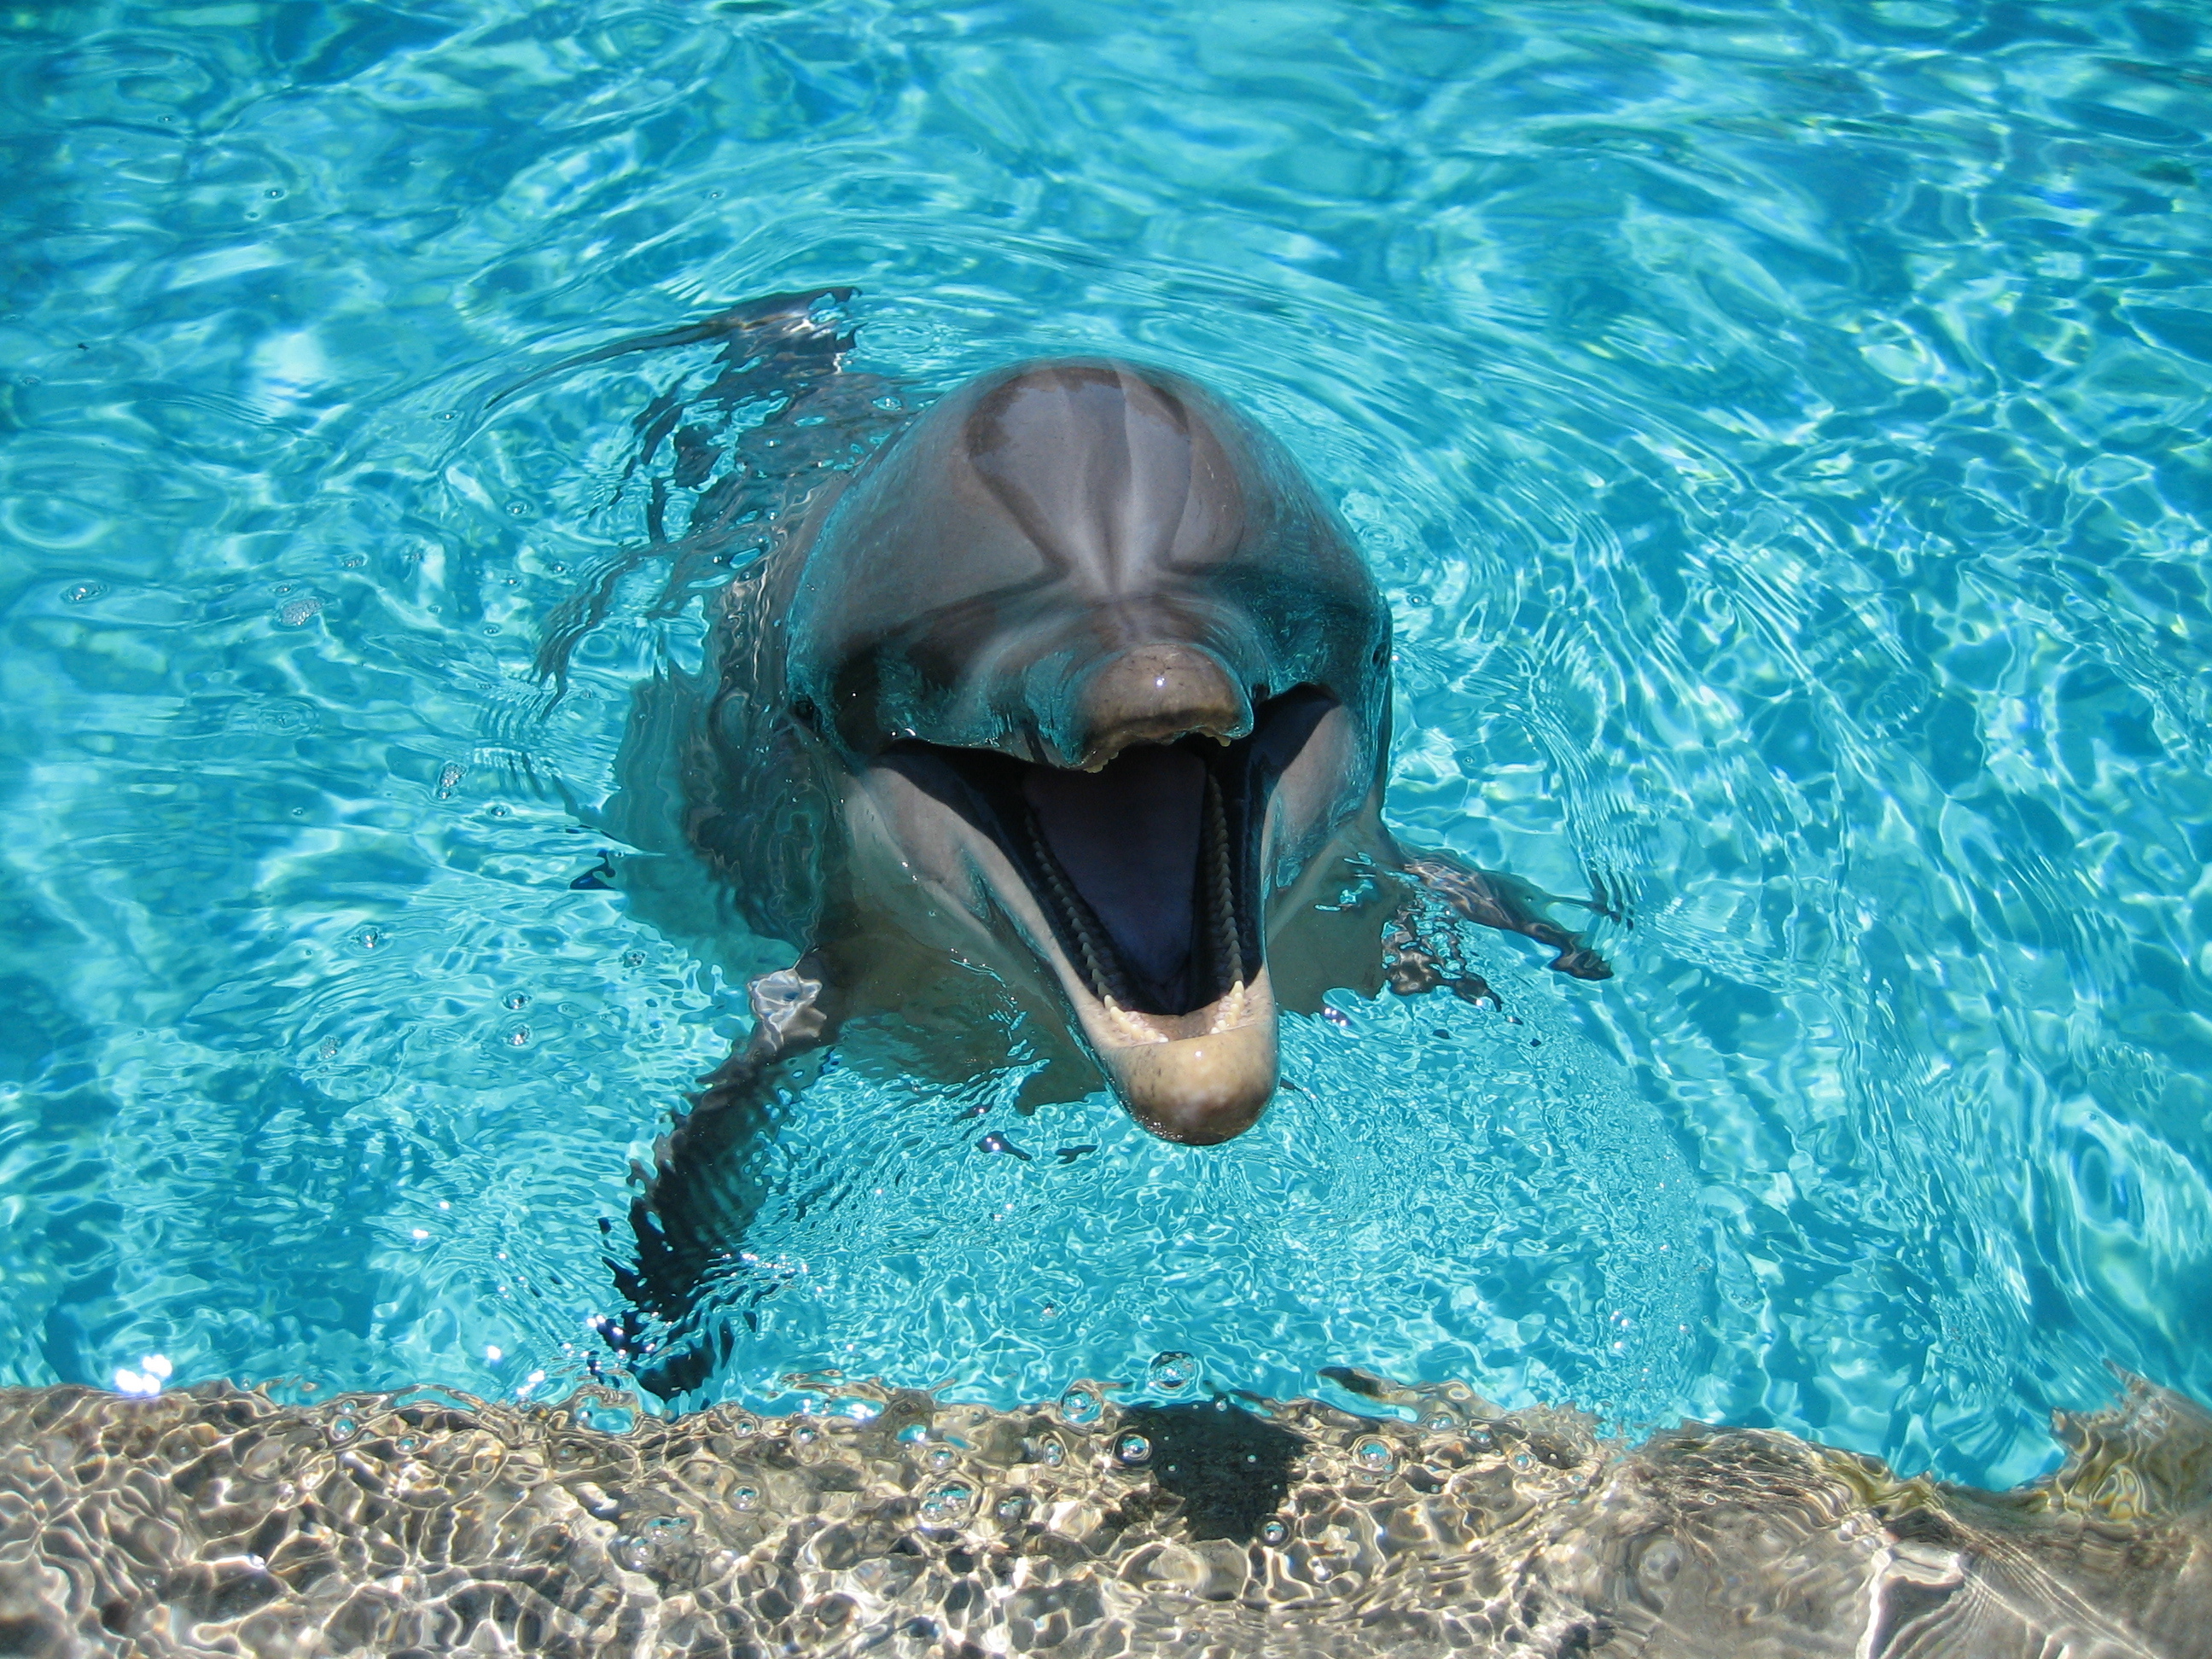 142199 Заставки и Обои Животные на телефон. Скачать бассейн, улыбка, дельфин, вода картинки бесплатно